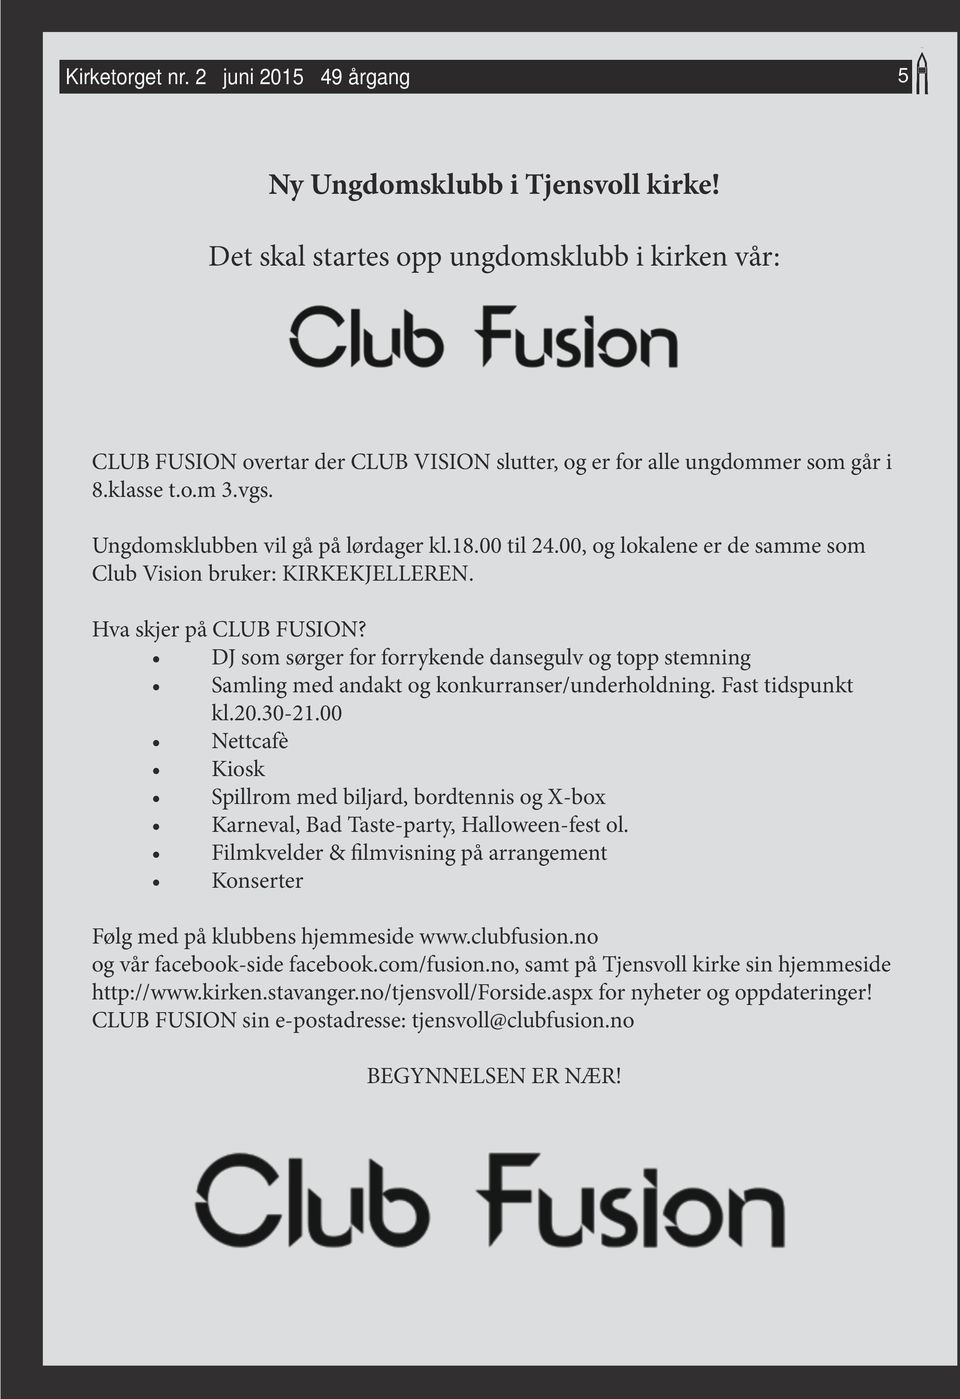 00, og lokalene er de samme som Club Vision bruker: KIRKEKJELLEREN. Hva skjer på CLUB FUSION? DJ som sørger for forrykende dansegulv og topp stemning Samling med andakt og konkurranser/underholdning.